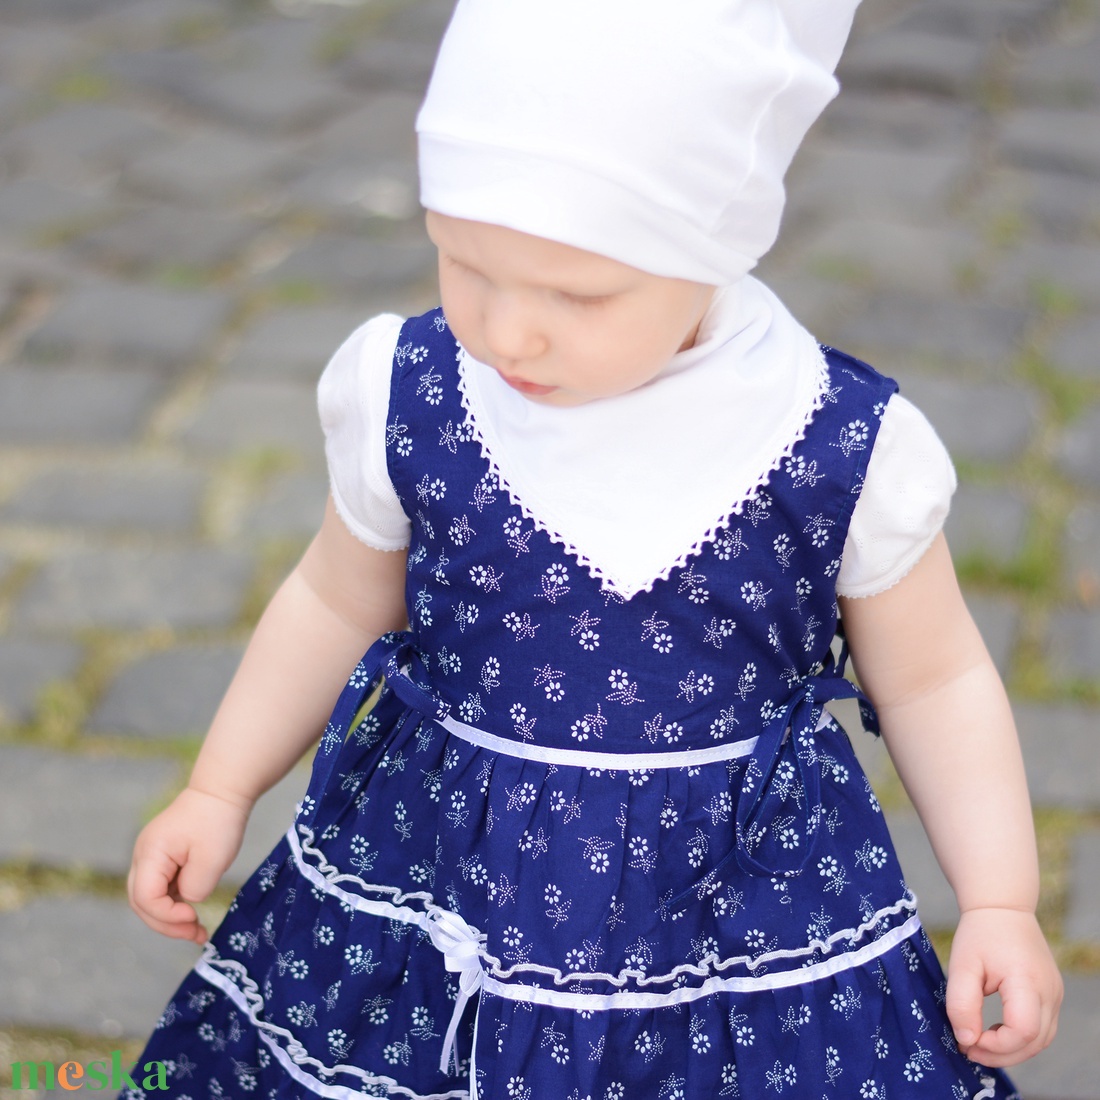 Kékfestő 62-152-es lány ruha madeira csipke díszítéssel - ruha & divat - babaruha & gyerekruha - ruha - Meska.hu